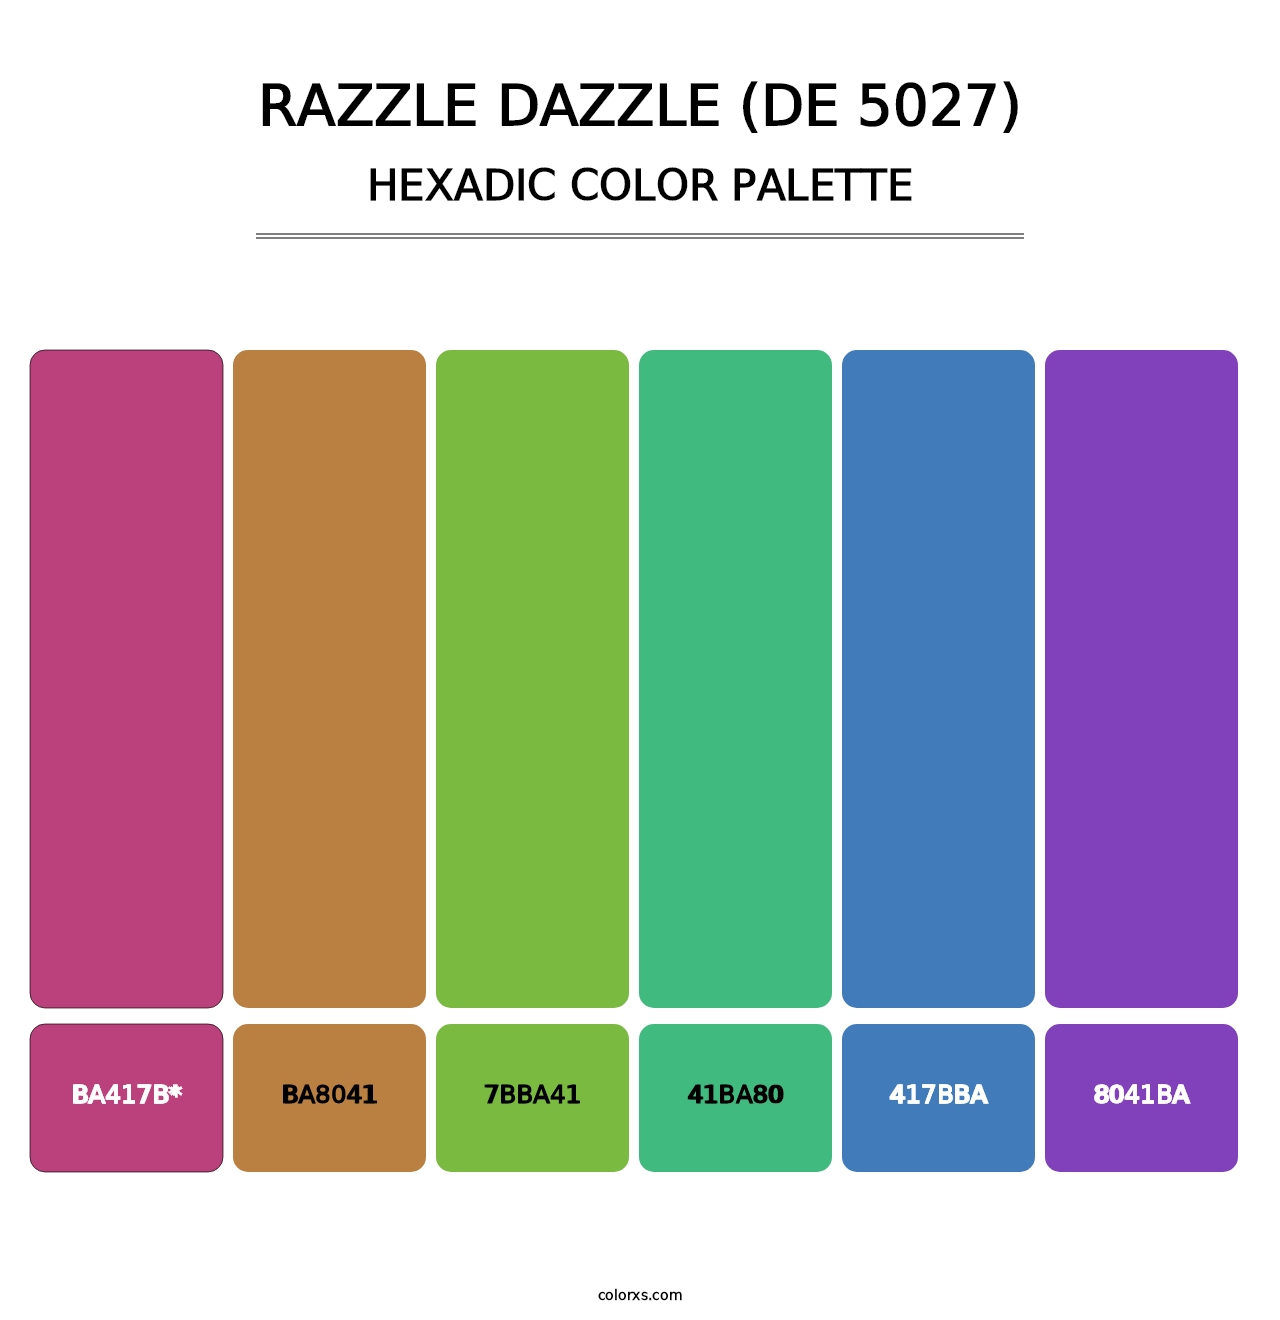 Razzle Dazzle (DE 5027) - Hexadic Color Palette